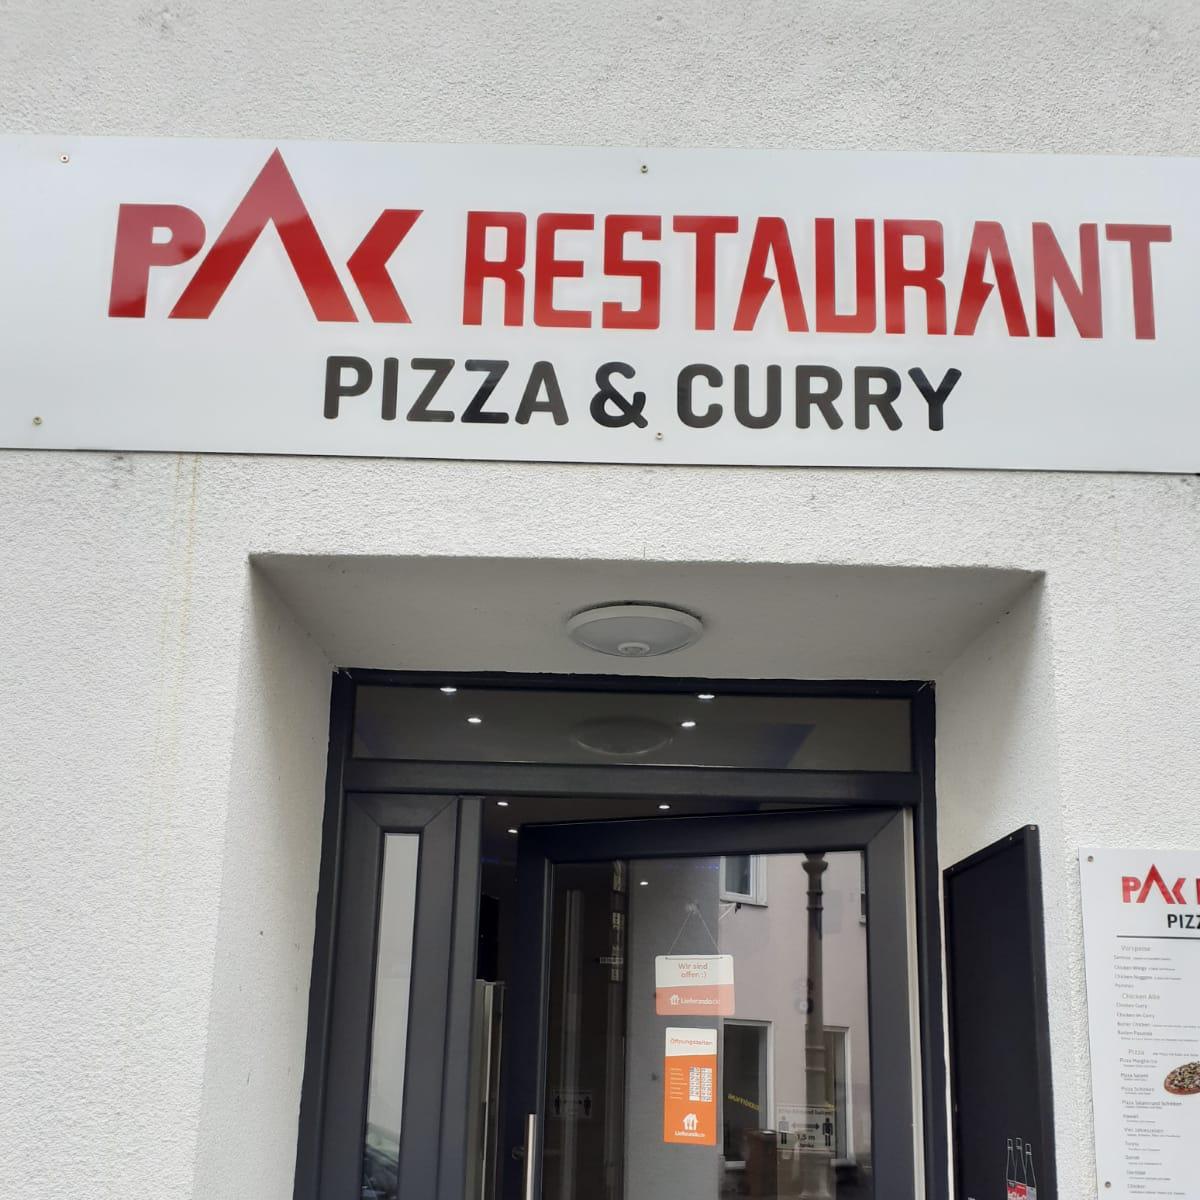 Restaurant "Pak Restaurant" in Tuttlingen